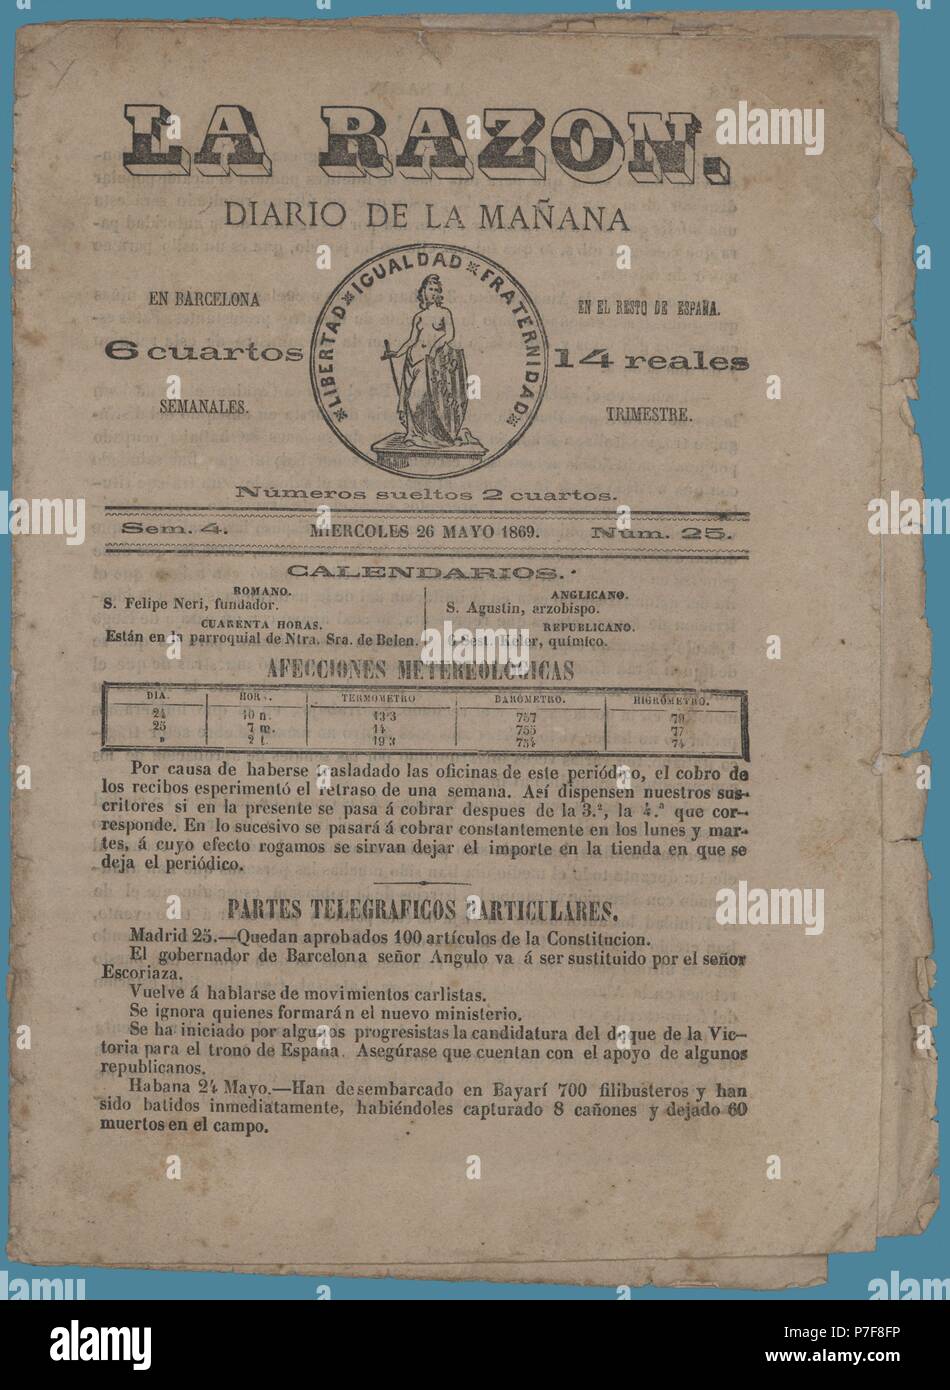 Portada del diario de la mañana La Razón, editado en Barcelona, año 1869  Stock Photo - Alamy